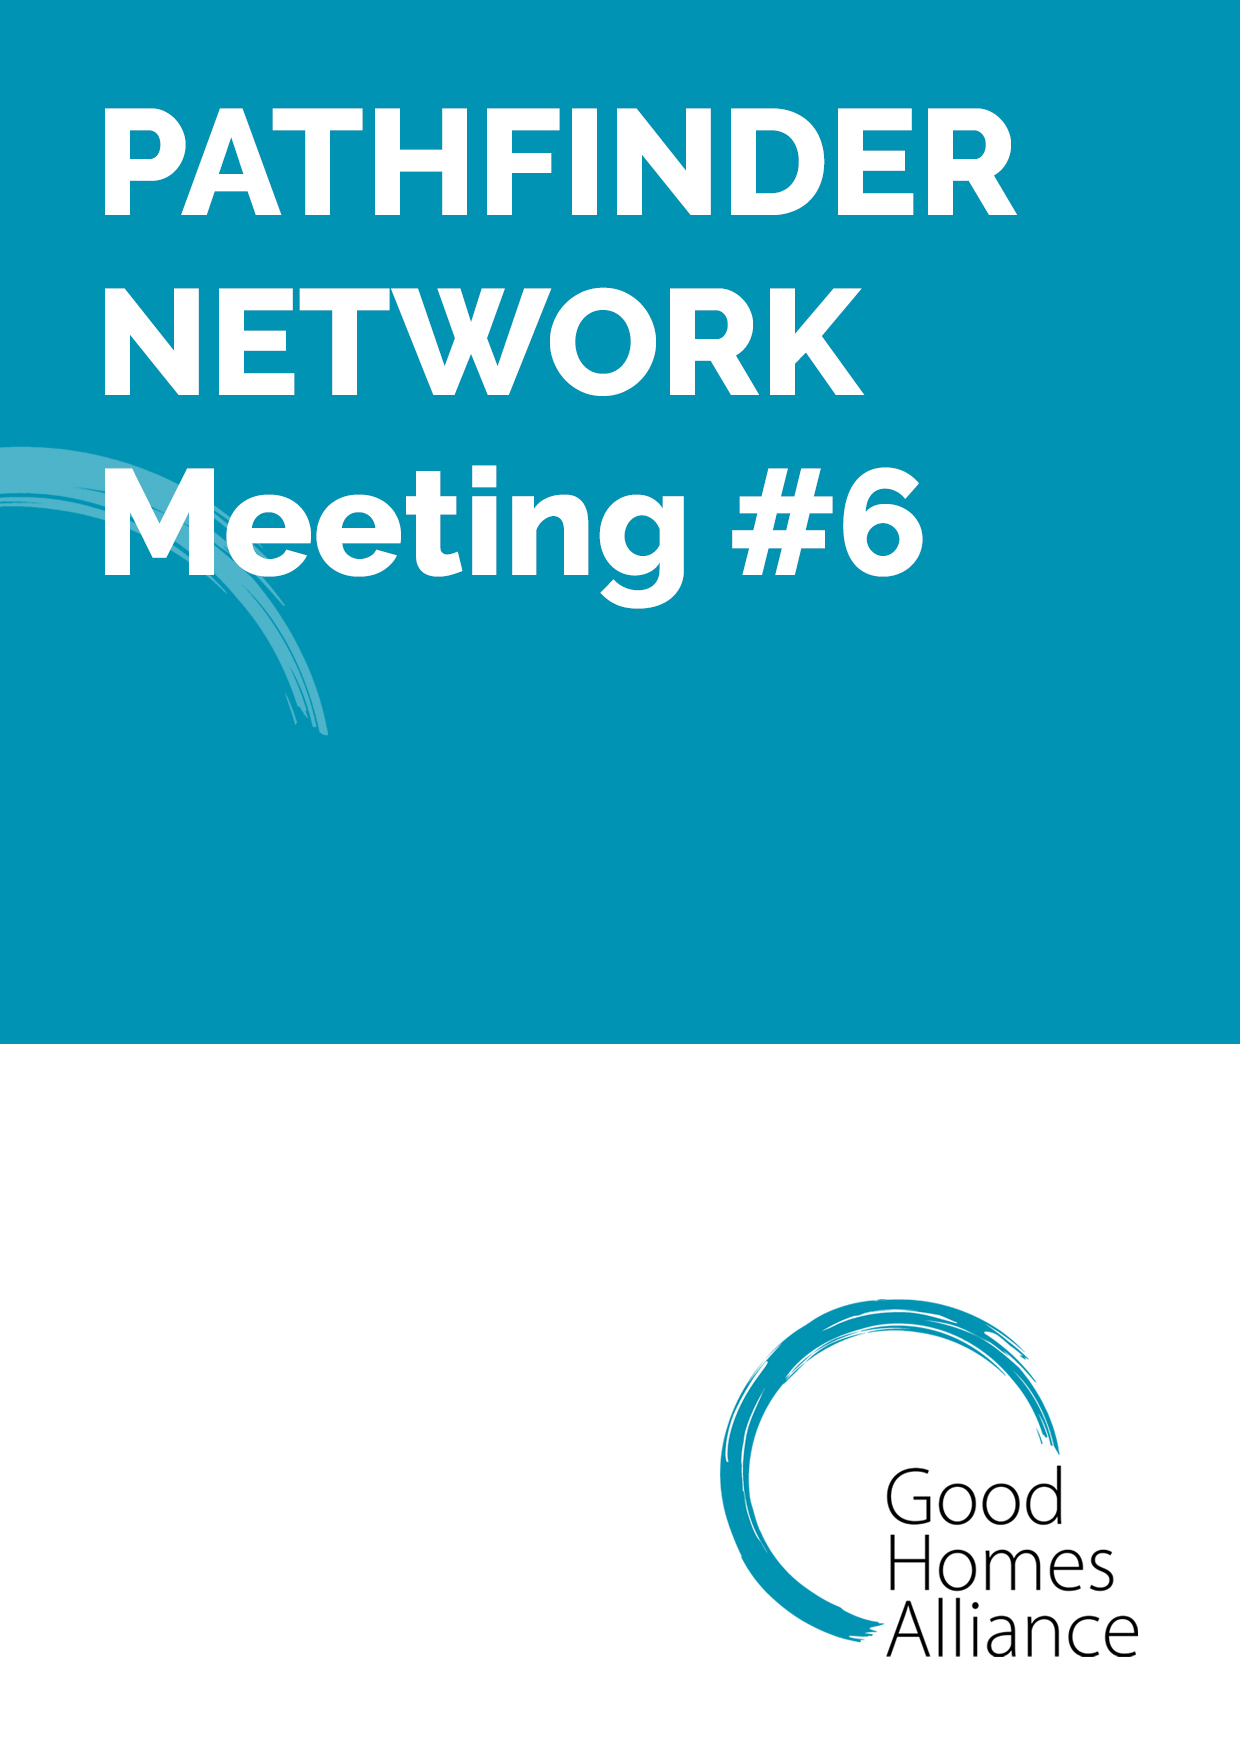 Pathfinder Network meeting #6